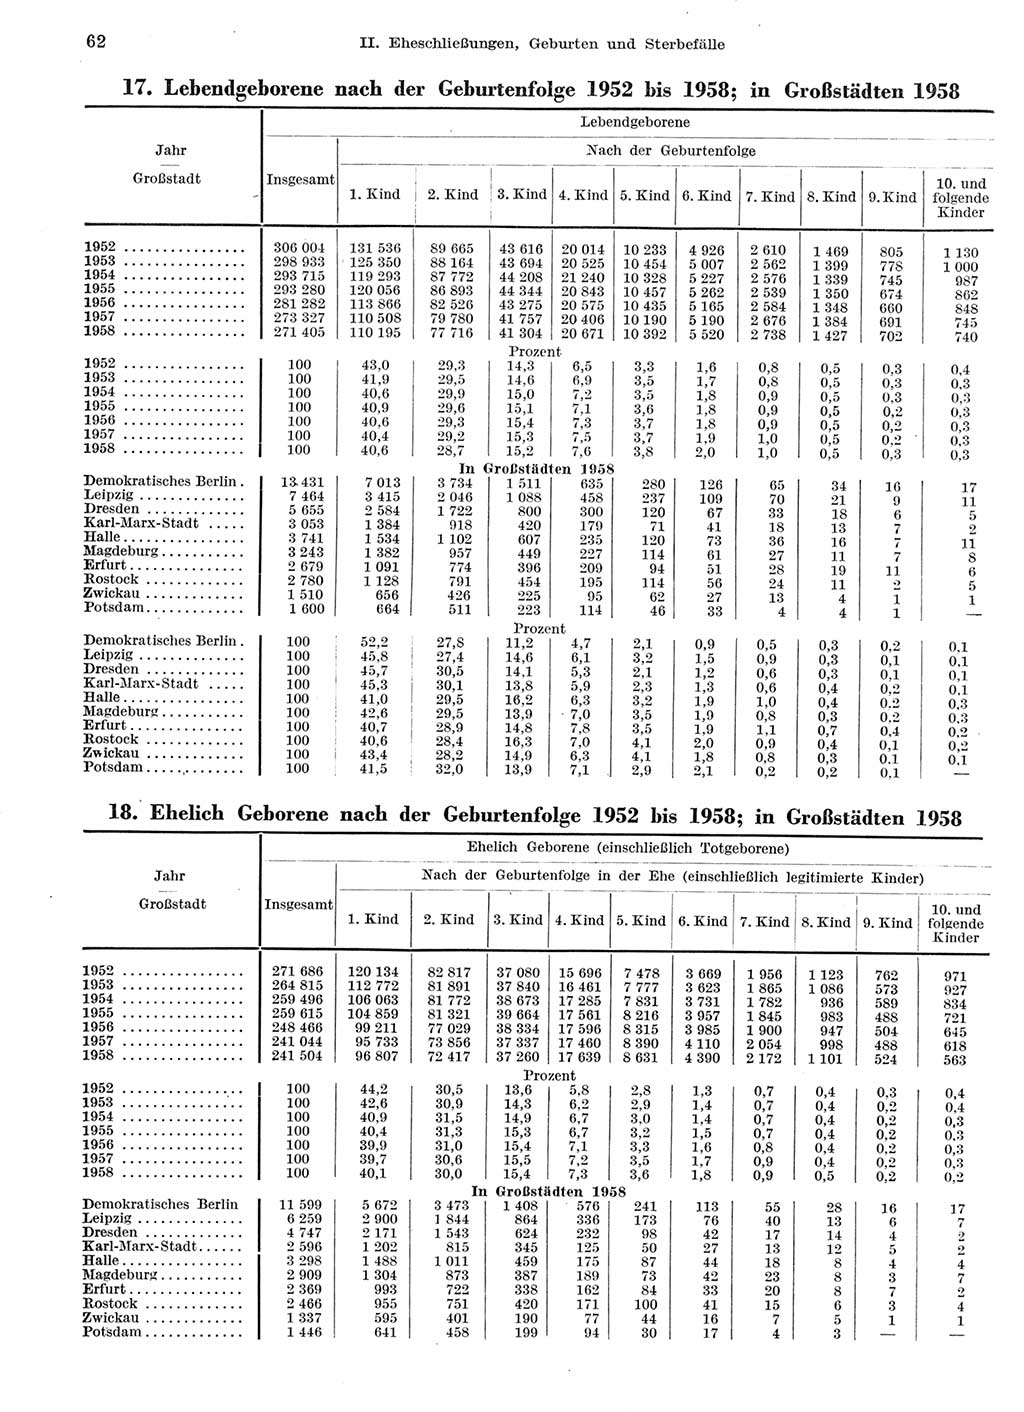 Statistisches Jahrbuch der Deutschen Demokratischen Republik (DDR) 1959, Seite 62 (Stat. Jb. DDR 1959, S. 62)